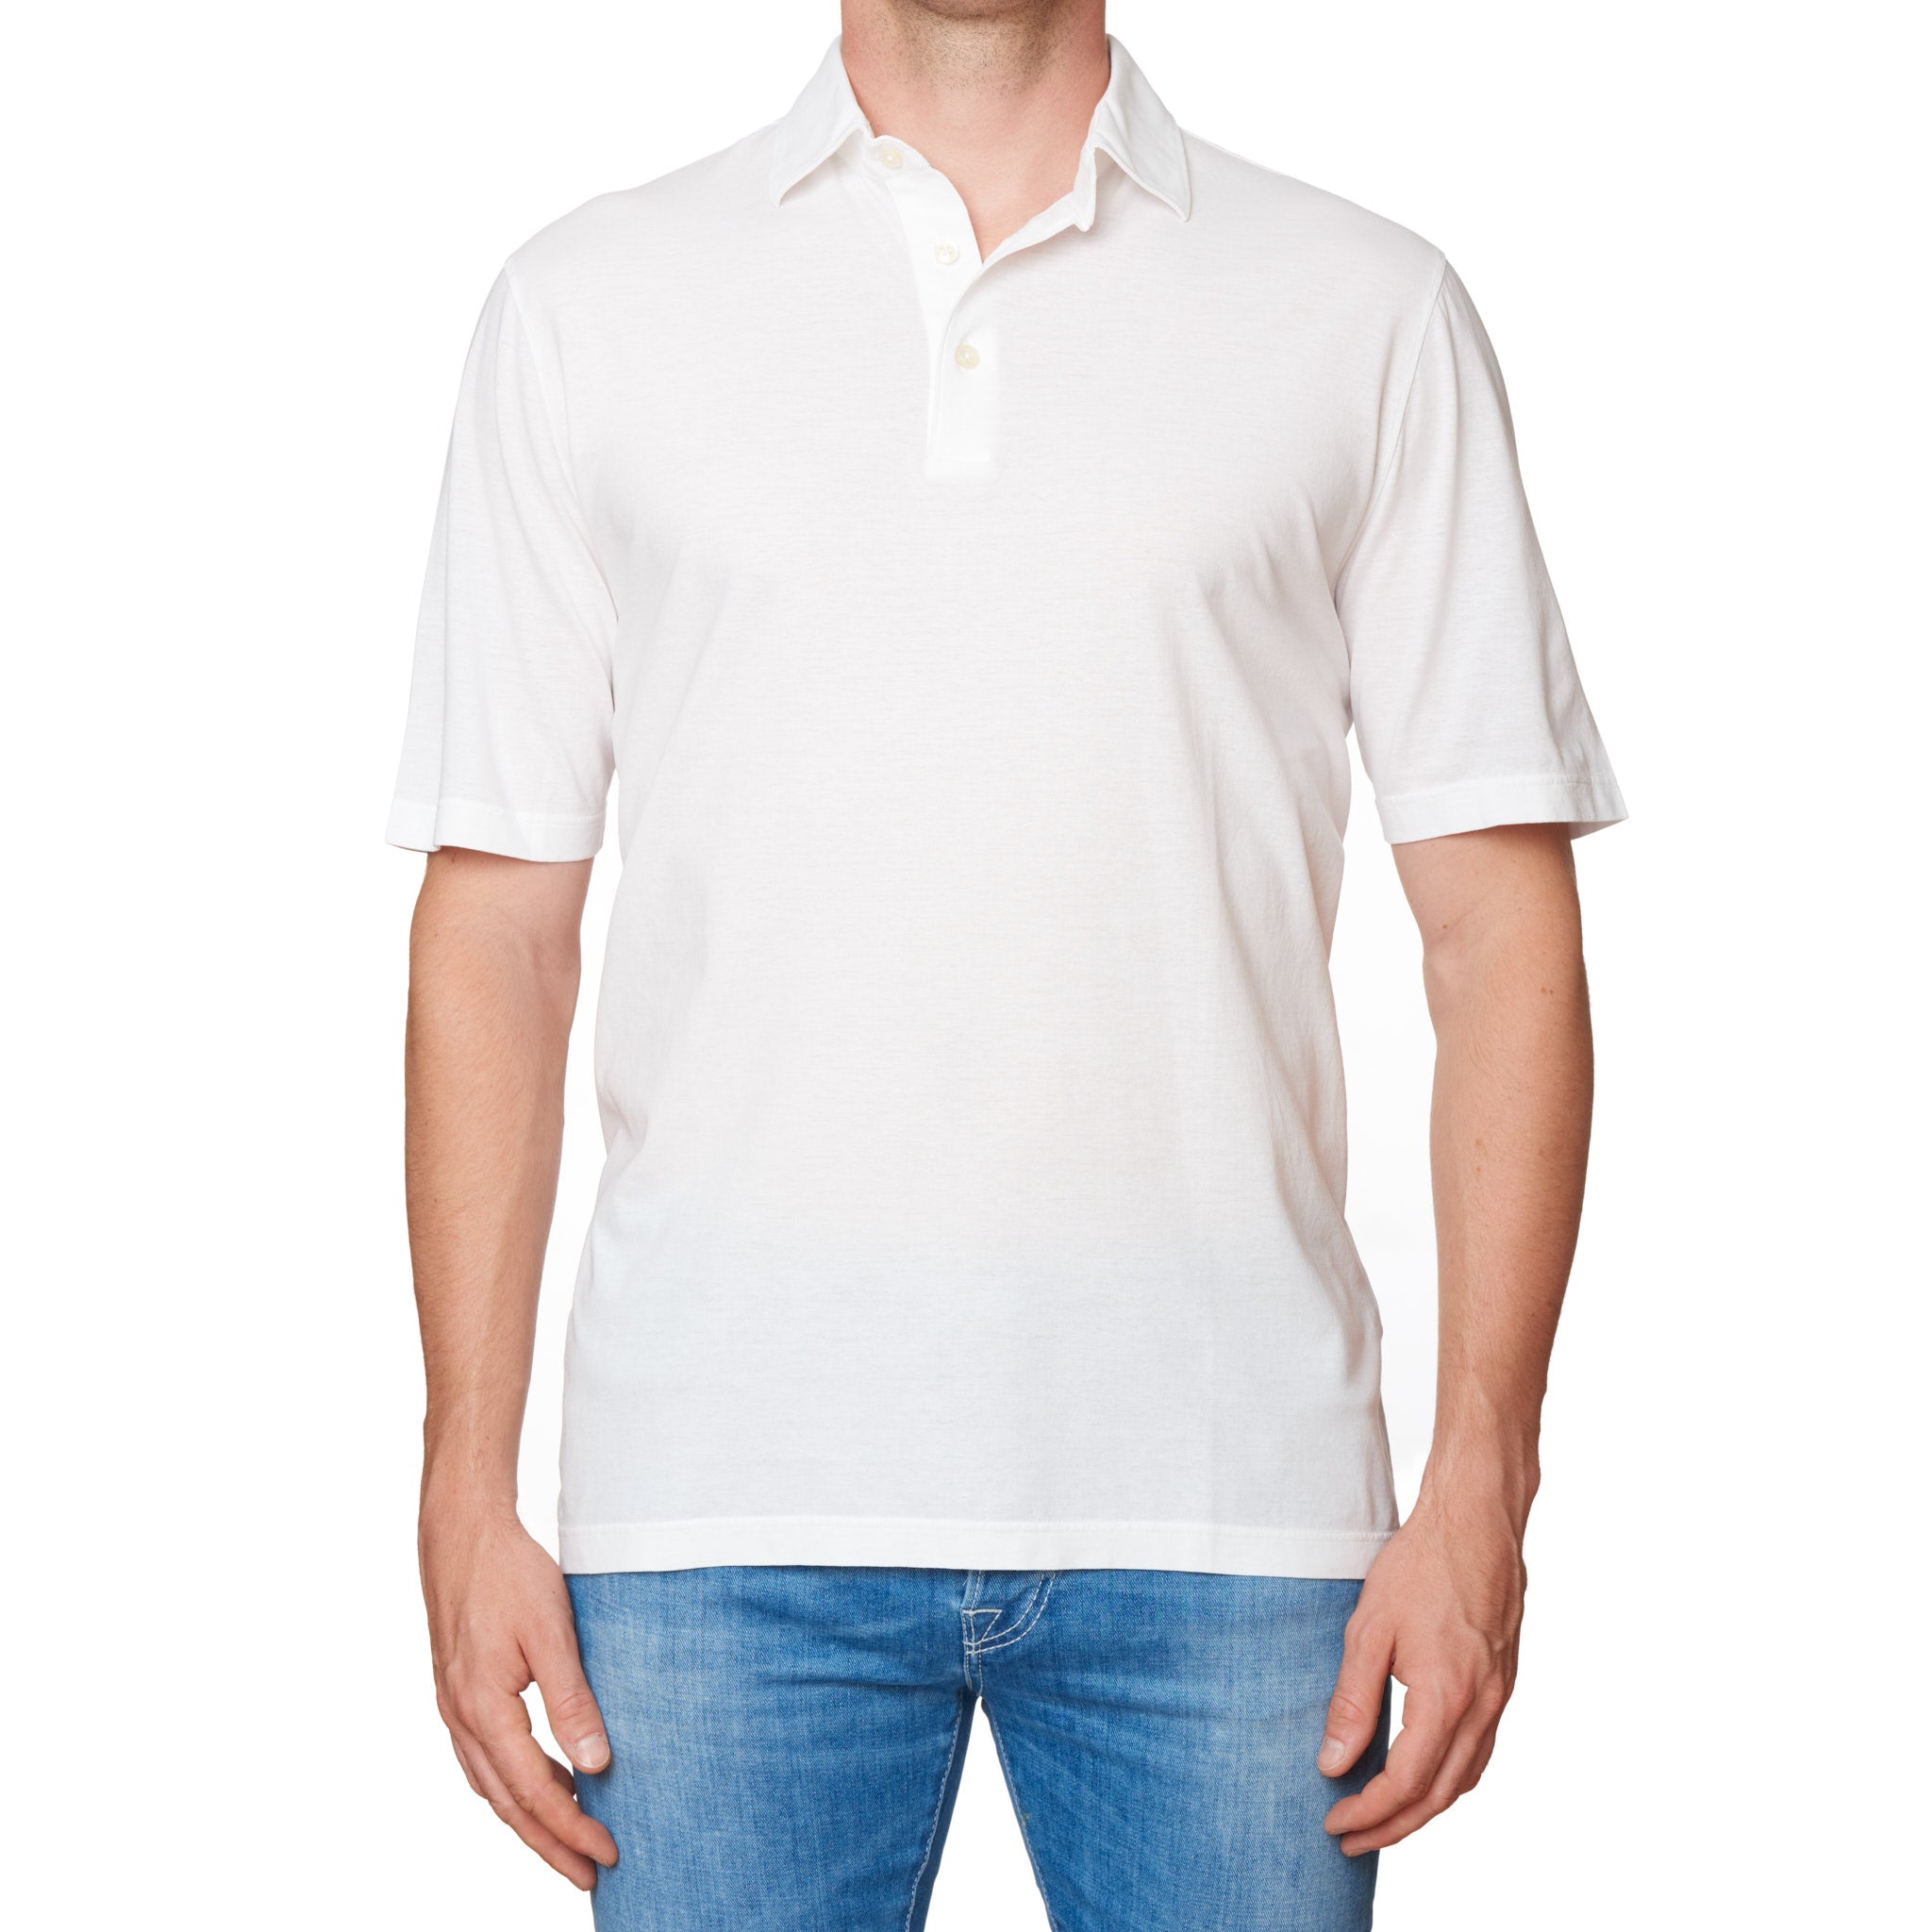 Kiton KIRED "Positano" White Exclusive Crepe Cotton Short Sleeve Polo Shirt NEW XS